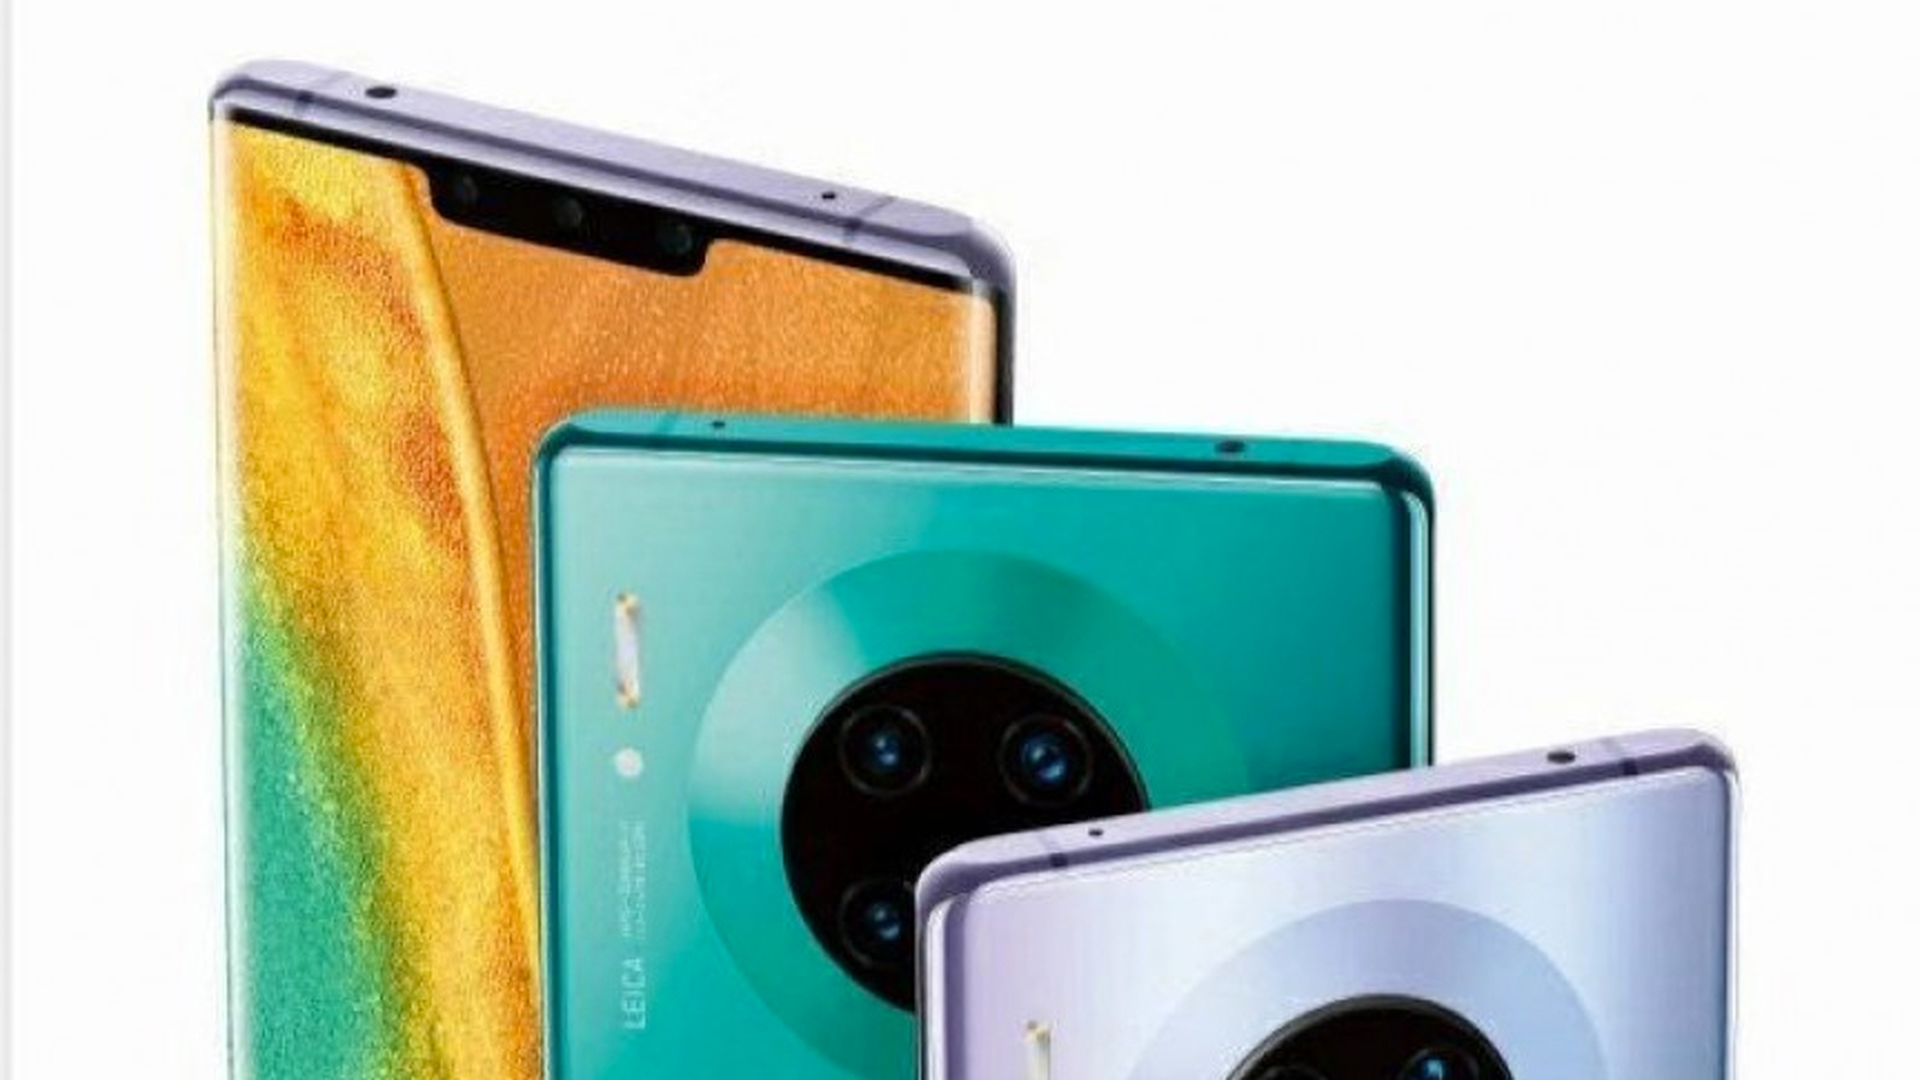 Flagowe urządzenia Huawei Mate 30 Lite, Mate 30 i Mate 30 Pro nie zostaną wydane w Europie z powodu sankcji USA